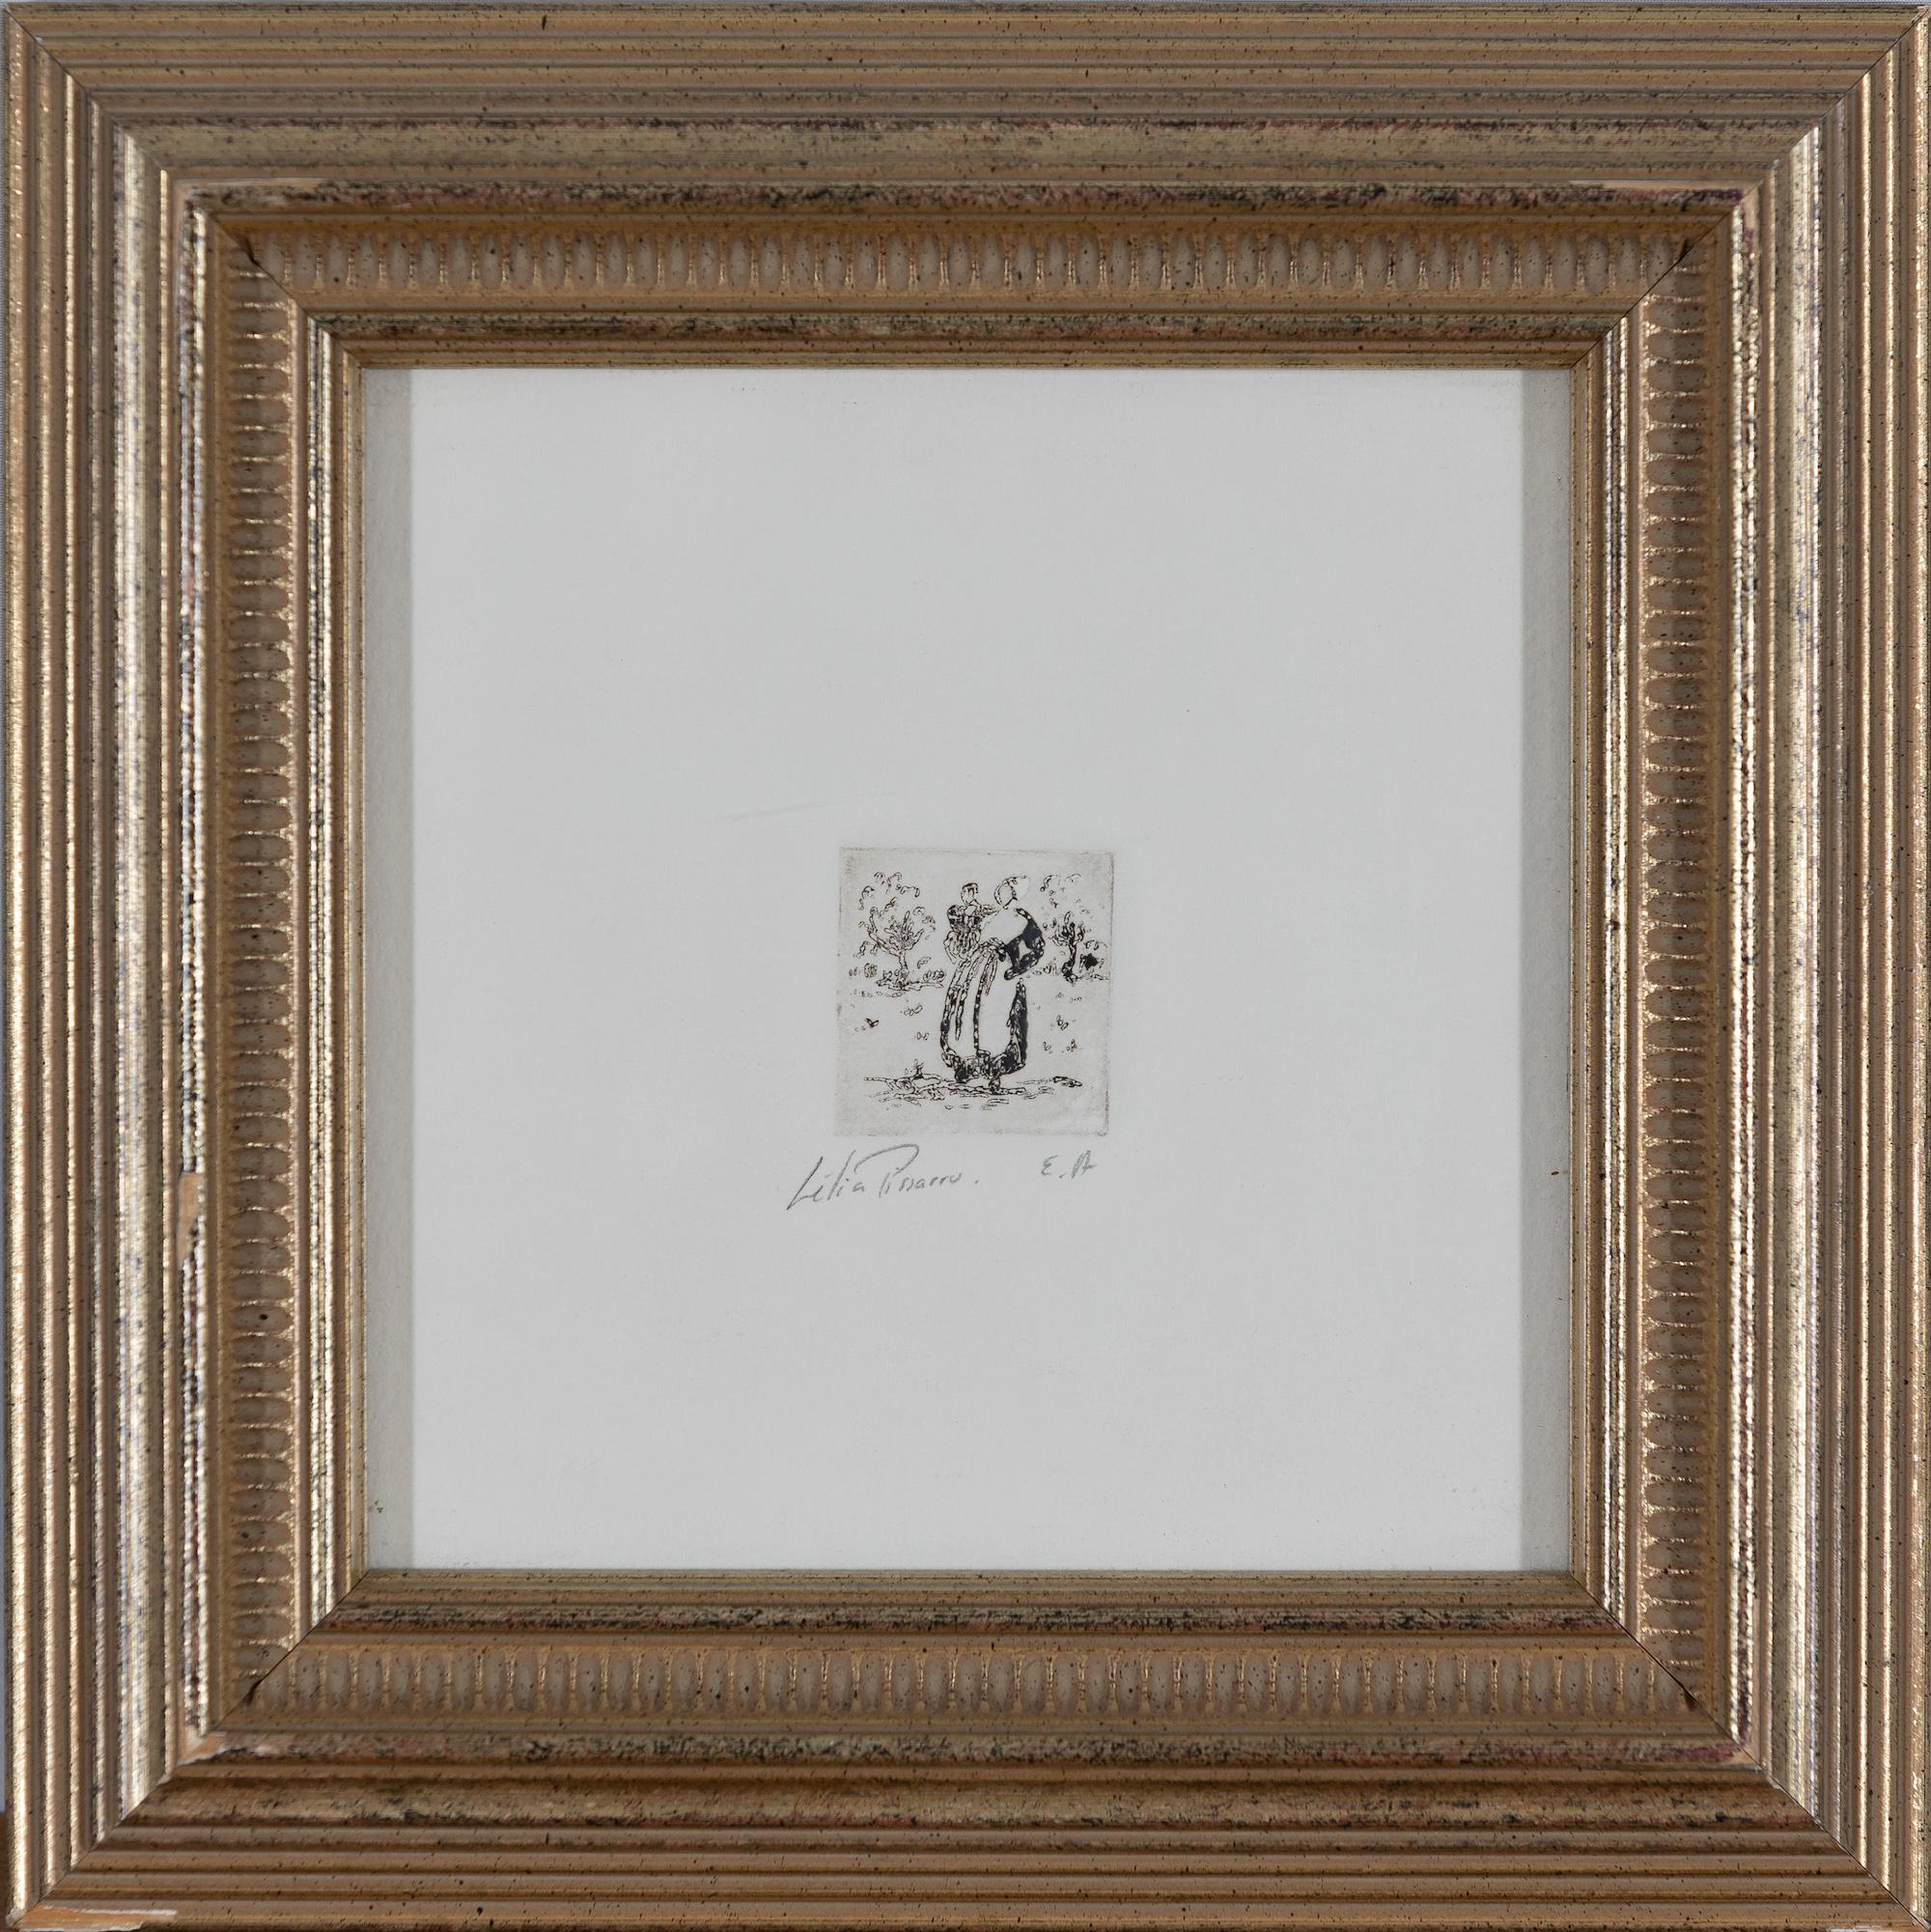 Mère et enfant by Lélia Pissarro - Etching - Print by Lelia Pissarro